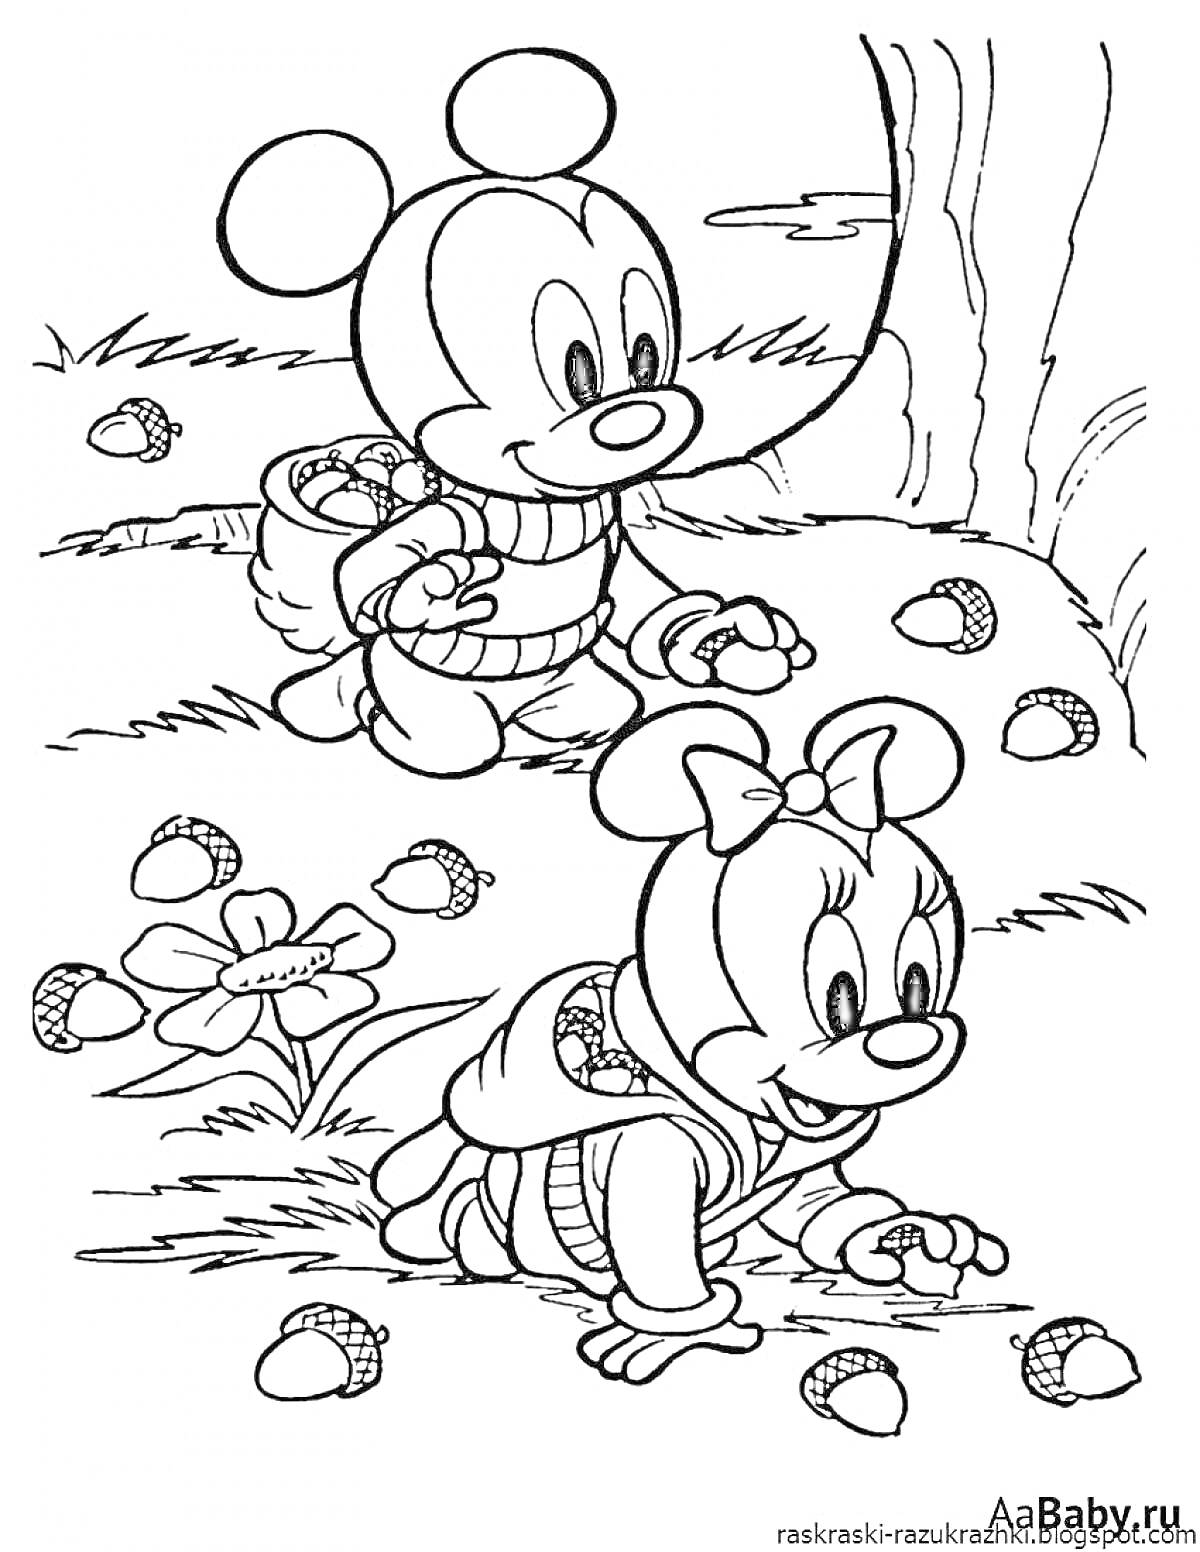 РаскраскаДва мышонка собирают шишки на лесной полянке